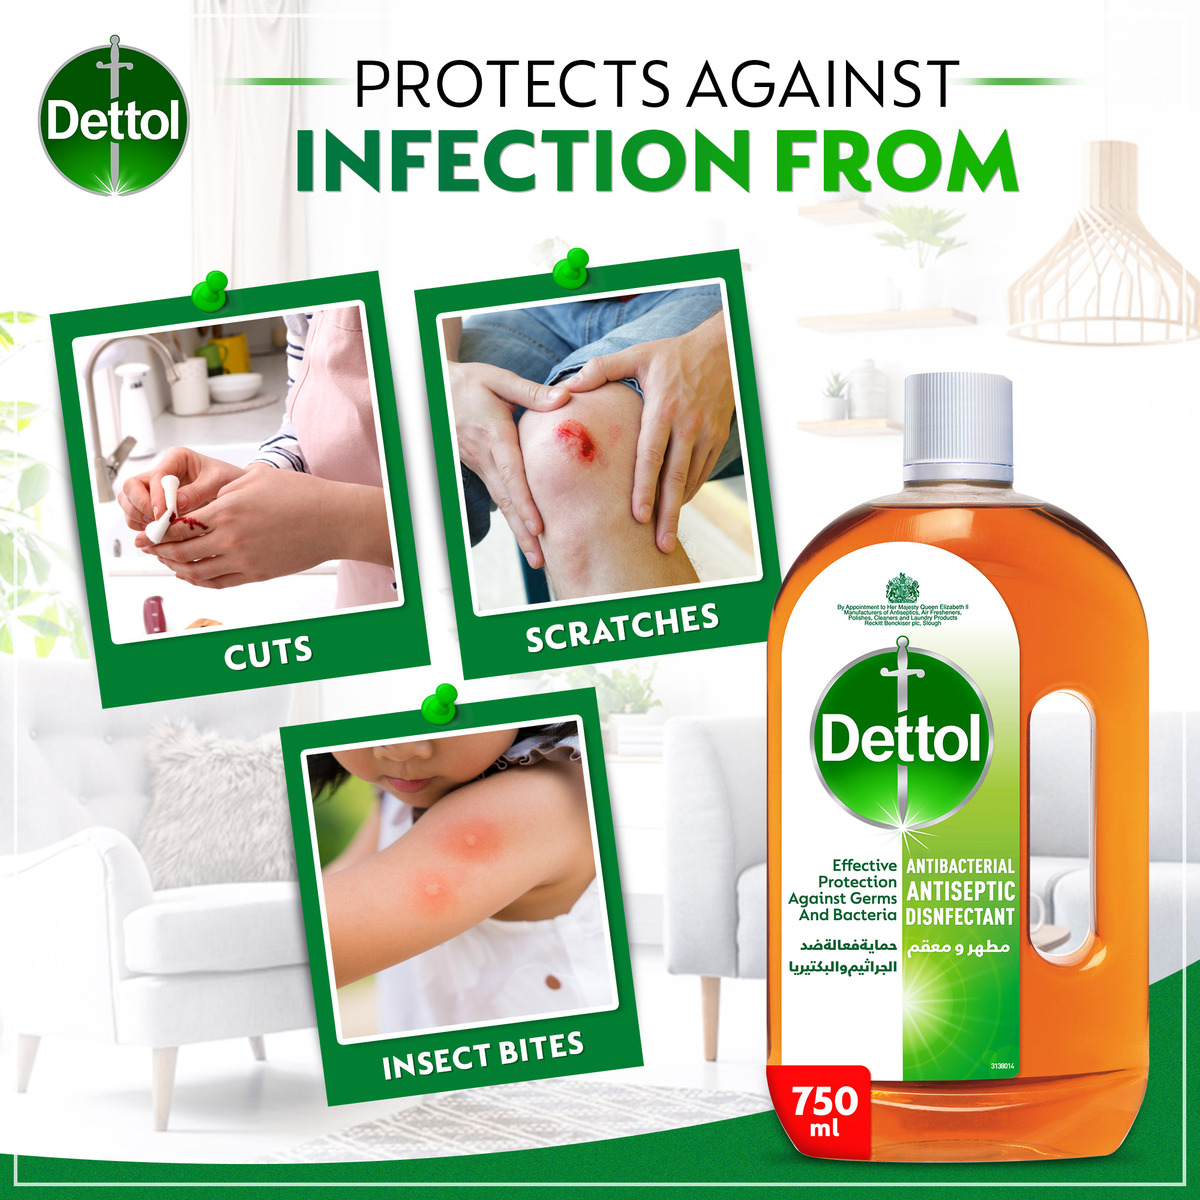 Dettol Antiseptic Antibacterial Disinfectant Liquid 750 ml